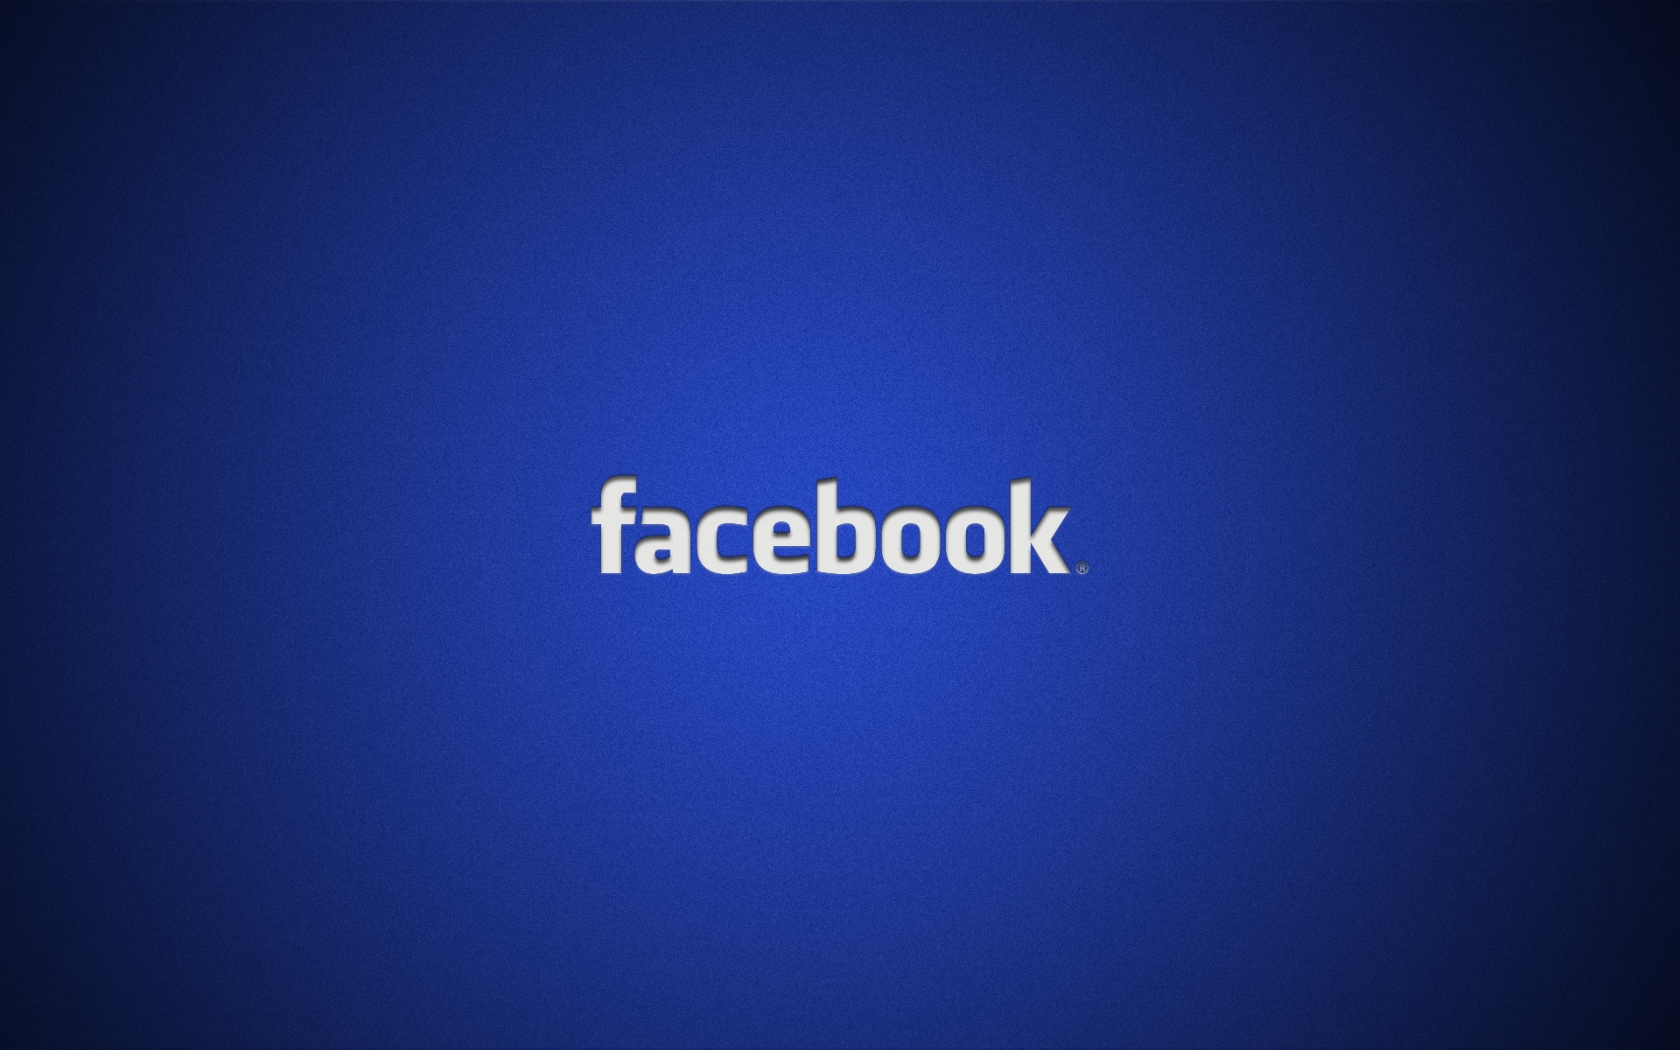 Facebook Logo for 1680 x 1050 widescreen resolution